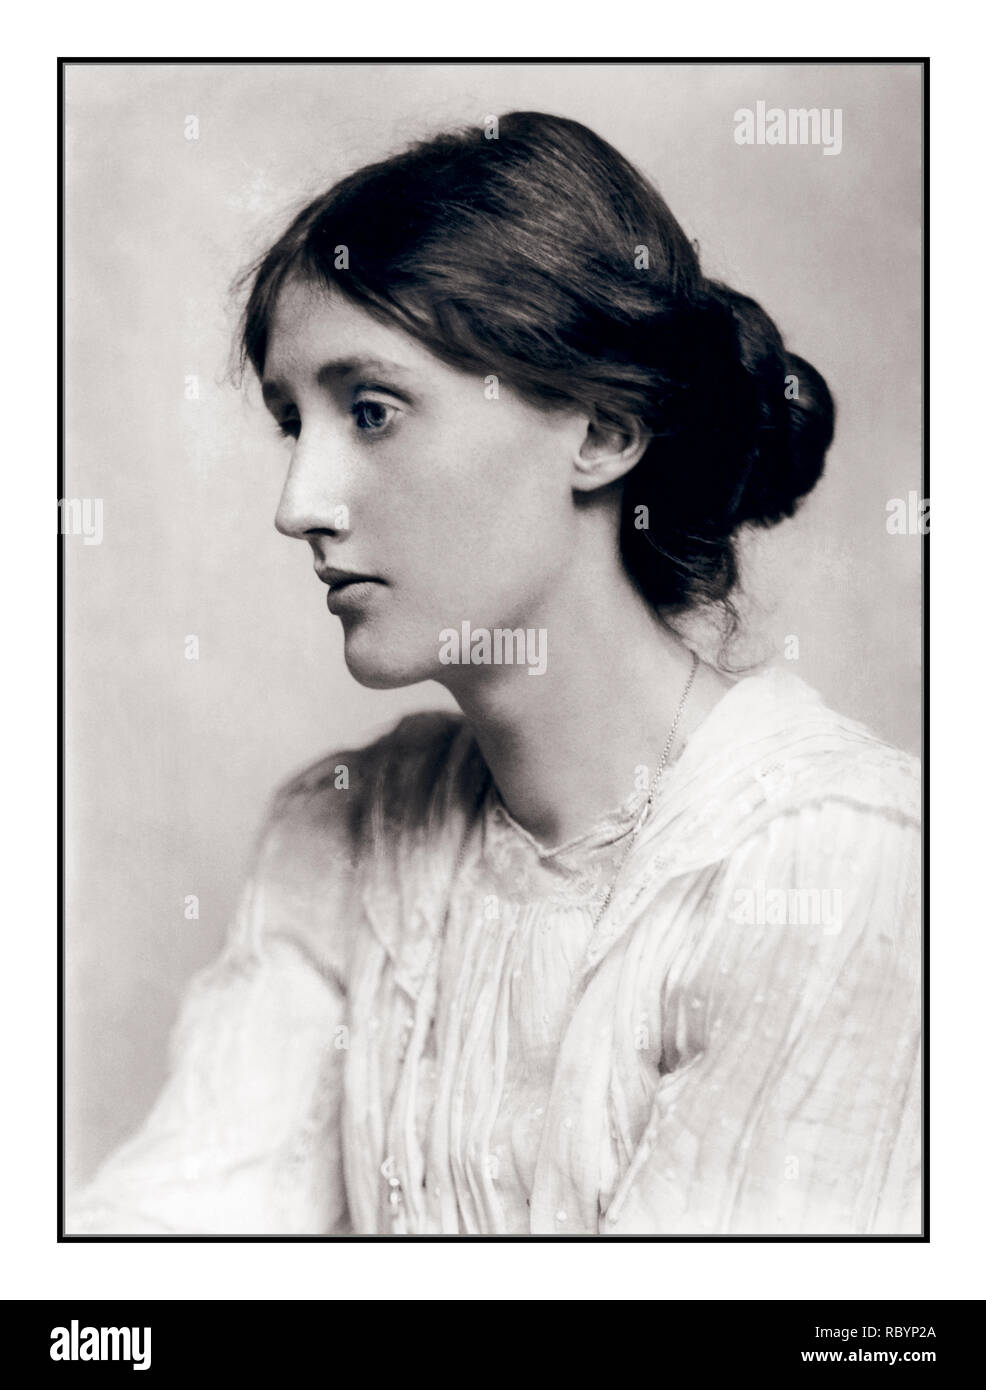 VIRGINIA WOOLF Archive B&W 1900's gemäßigtes, wehmütiges Porträt von Virginia Woolf (25. Januar 1882 – 28. März 1941), einer britischen Autorin und Feministin, mit ihrem Chignon. Stockfoto